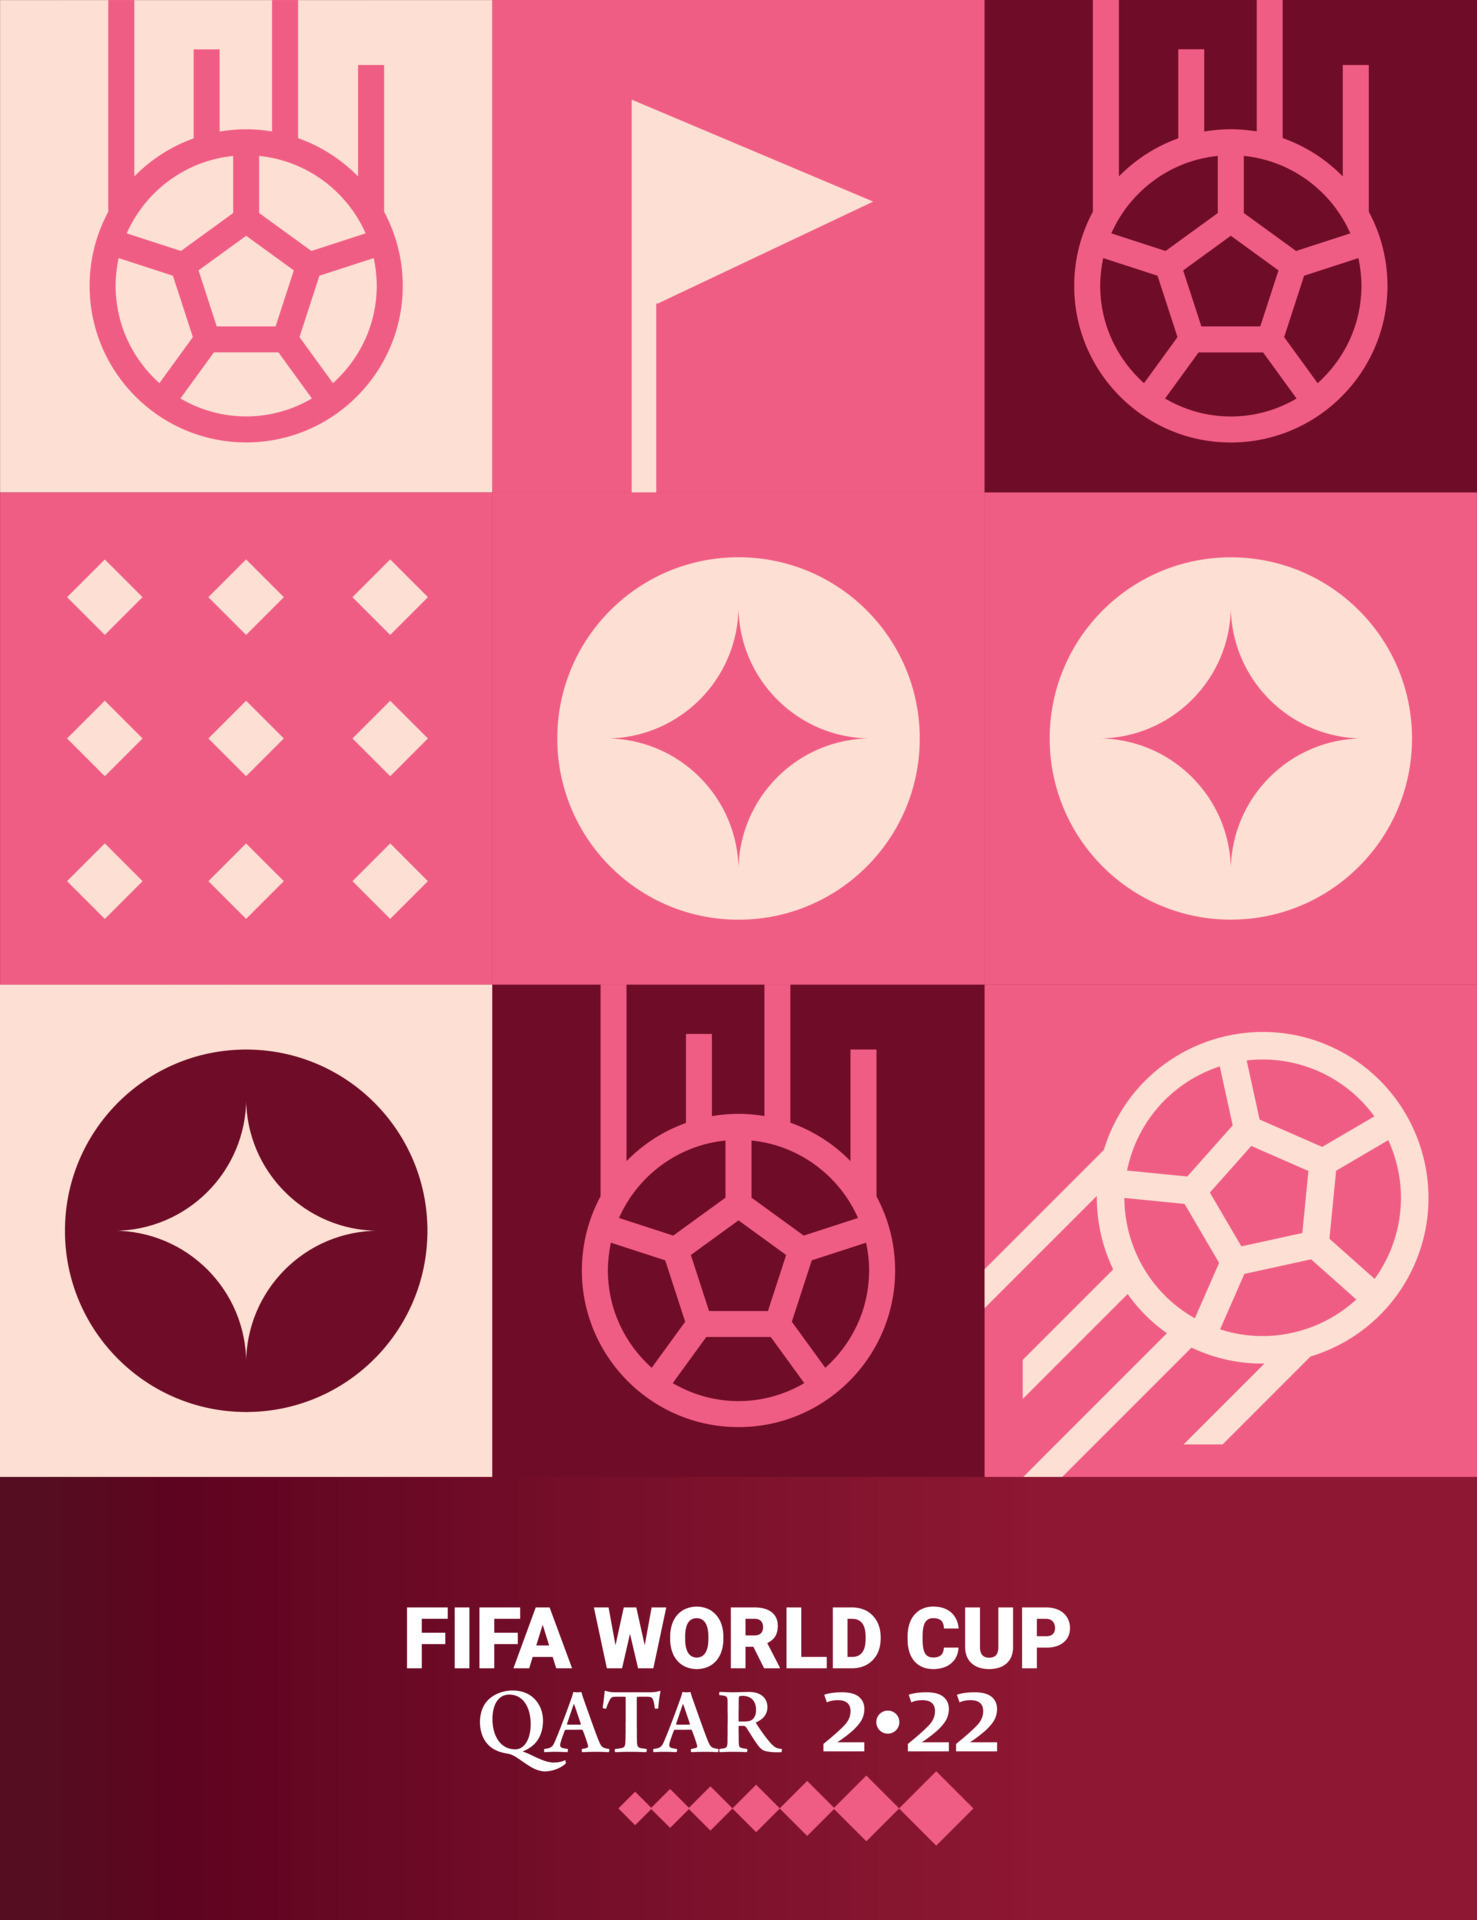 Bóng đá Doha Qatar 2022 sáng tạo: Bức poster hình học cho bóng đá Doha Qatar 2022 thực sự gây ấn tượng. Thiết kế đậm chất sáng tạo này đưa bạn đến thế giới bóng đá đầy màu sắc và hứng khởi, giúp bạn cảm nhận được nhịp đập của mùa World Cup sắp tới. Hãy truy cập trang web để xem chi tiết bức hình đẹp này nhé!